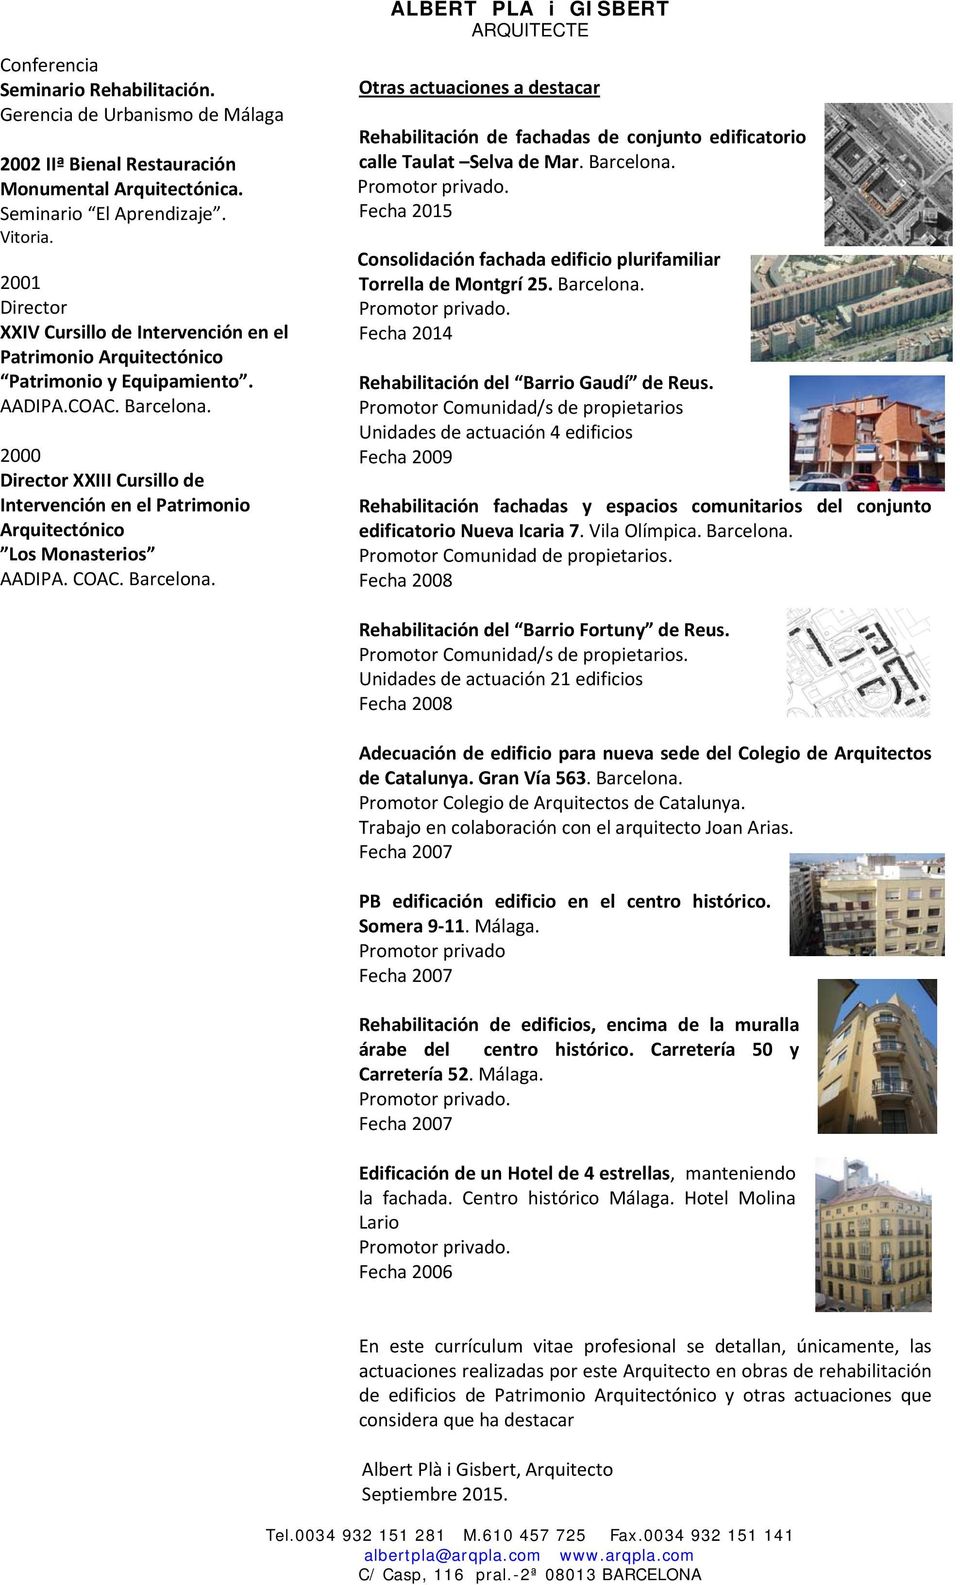 2000 Director XXIII Cursillo de Intervención en el Patrimonio Arquitectónico Los Monasterios AADIPA. COAC.